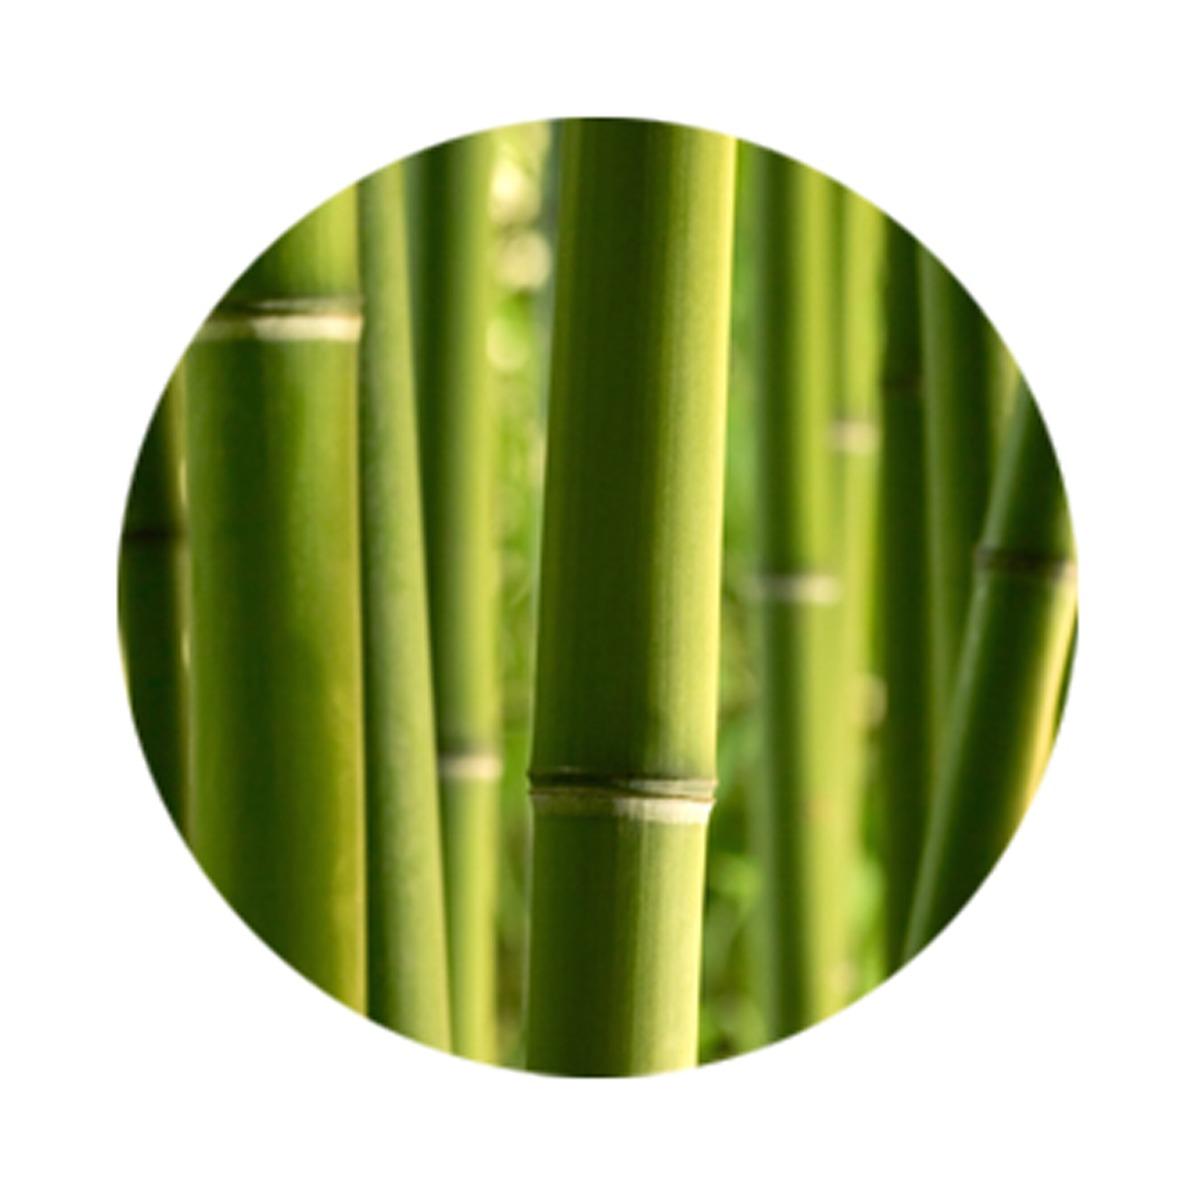 Assiette de présentation originale décor Bambou - Diamètre 33 cm - Multicolore